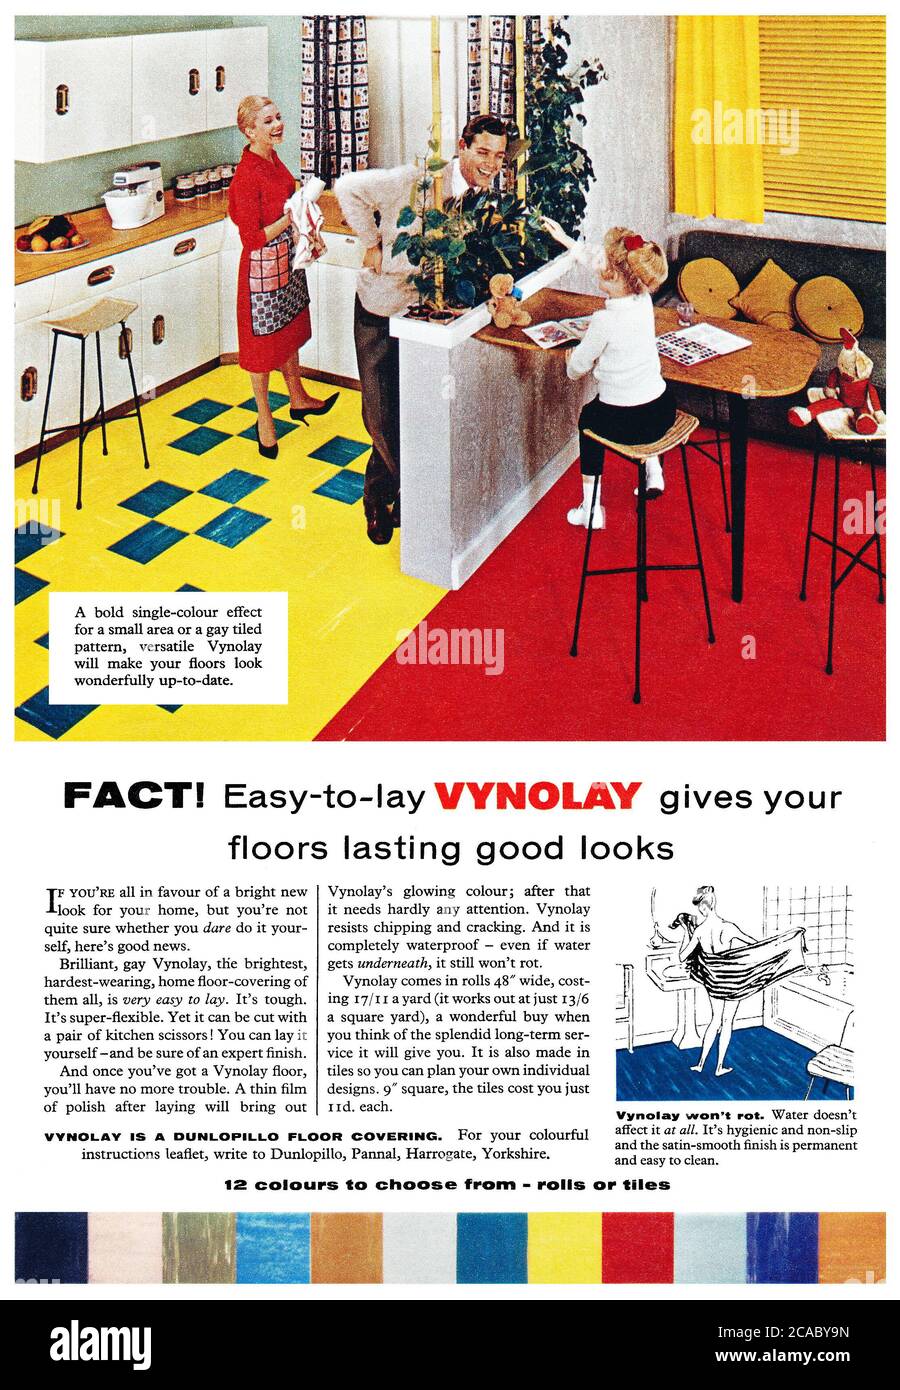 1961 Pubblicità britannica per rivestimenti di pavimenti Vynolay. Foto Stock